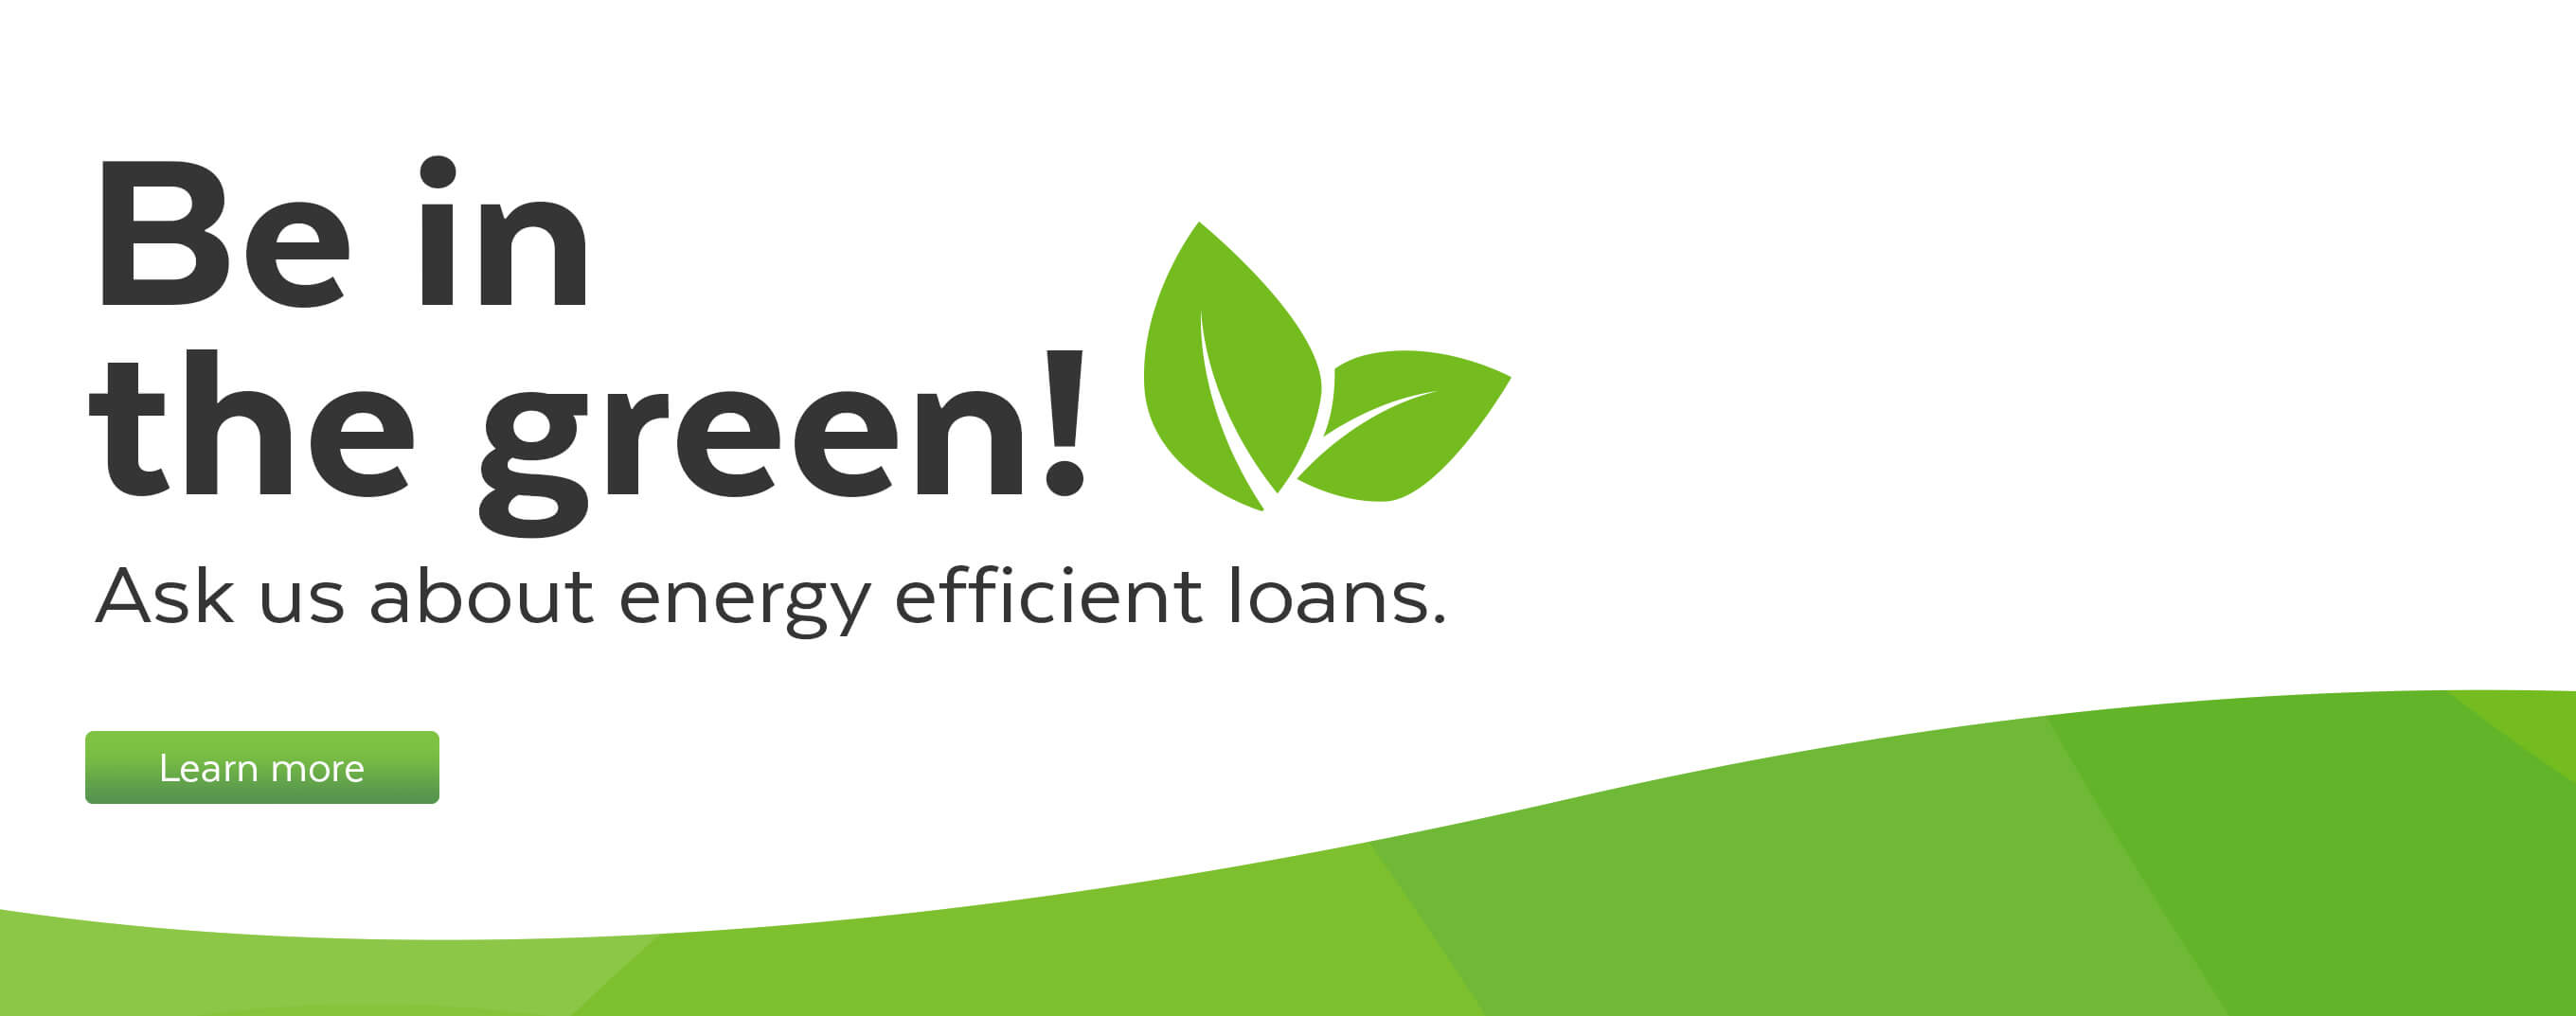 Go Green - Energy Efficient Loans v1